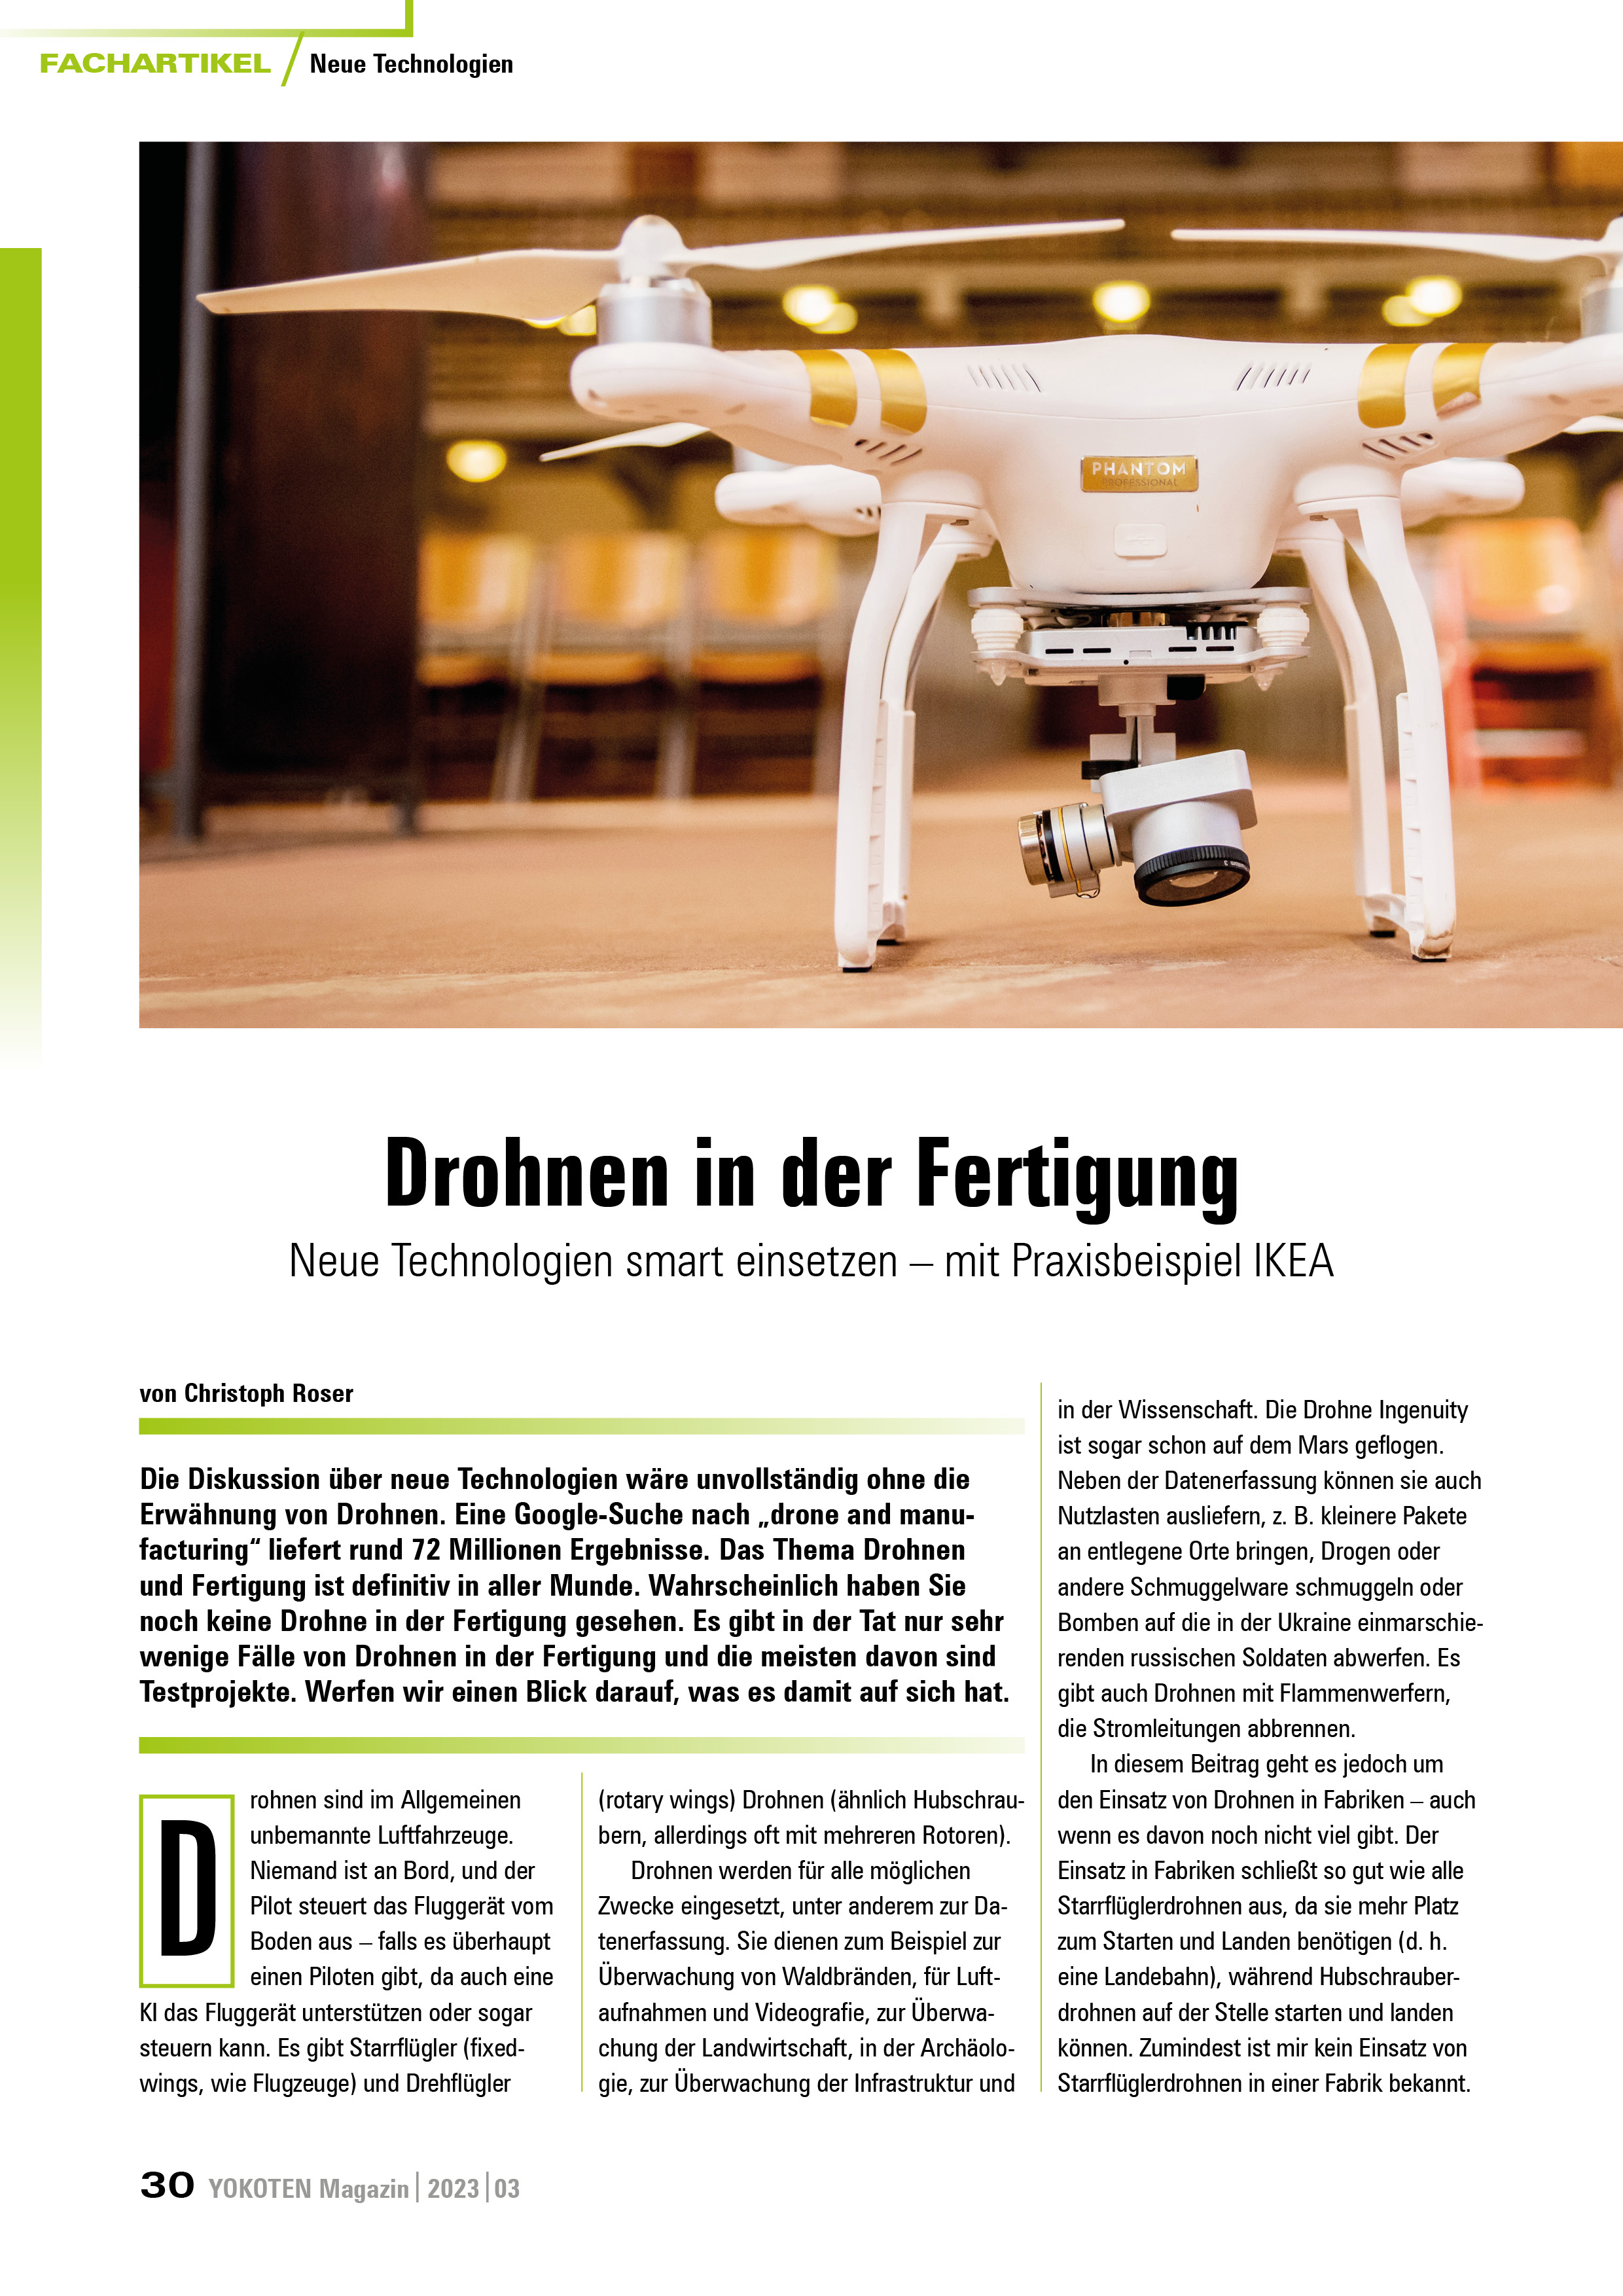 YOKOTEN-Artikel: Drohnen in der Fertigung